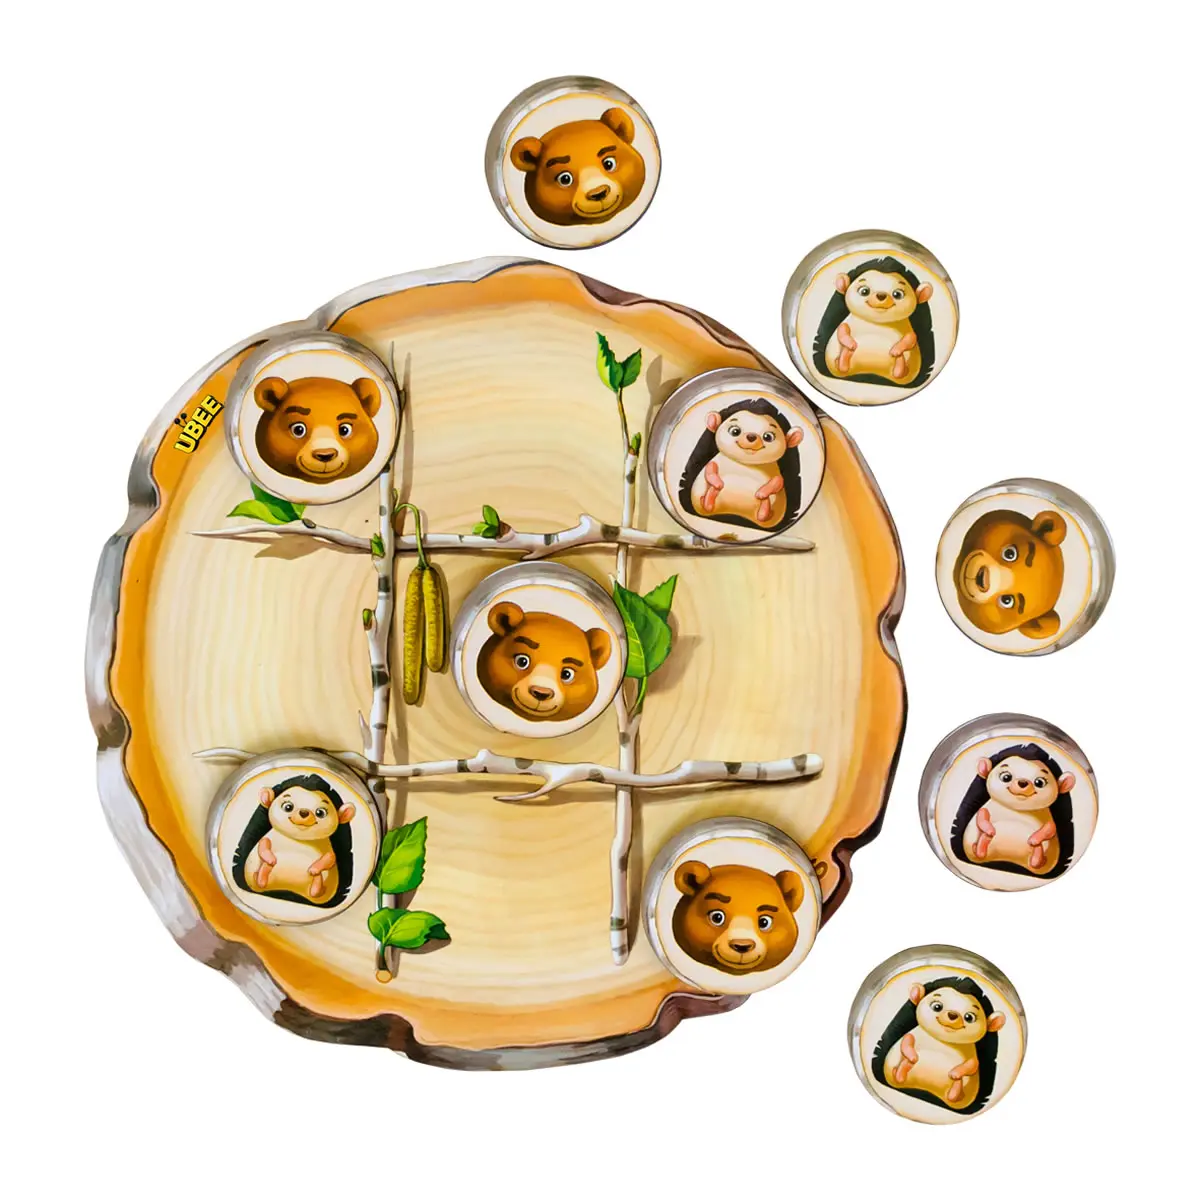 Дитяча дерев'яна розвиваюча гра Хрестики-нолики: їжачок та ведмідь